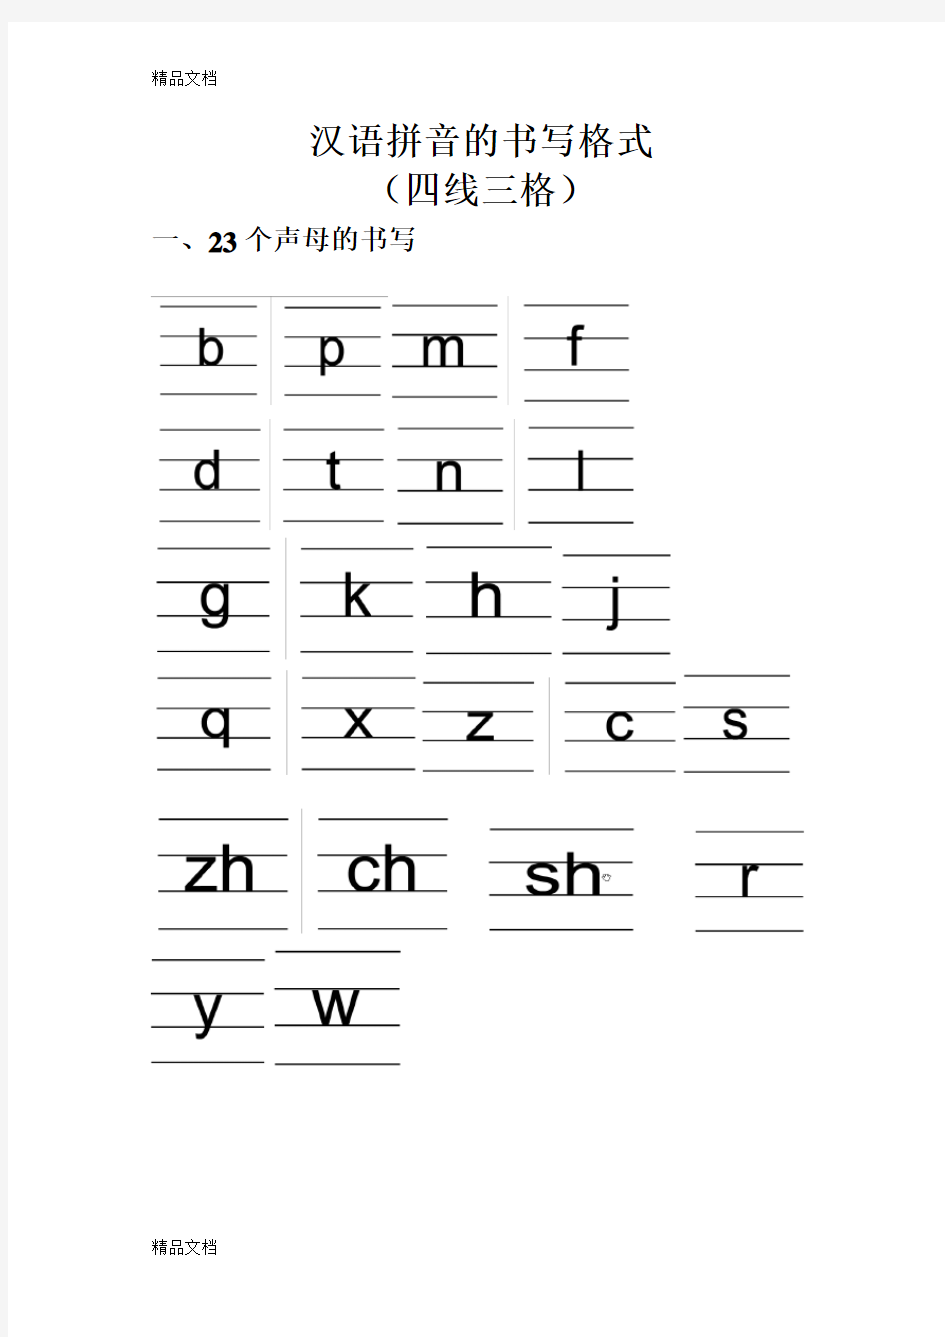 汉语拼音的书写格式(四线三格)47413教学提纲